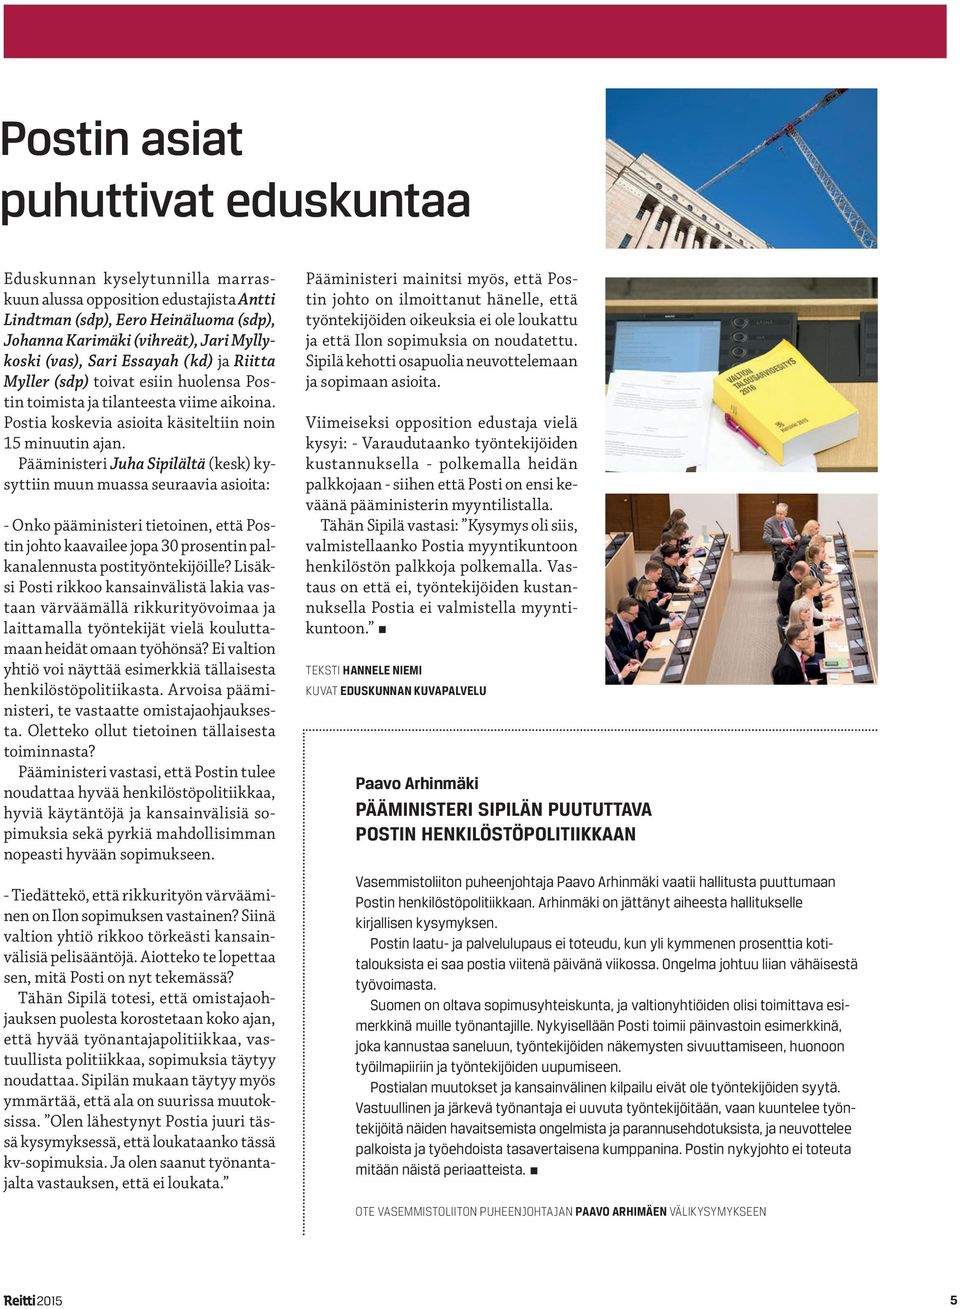 Pääministeri Juha Sipilältä (kesk) kysyttiin muun muassa seuraavia asioita: - Onko pääministeri tietoinen, että Postin johto kaavailee jopa 30 prosentin palkanalennusta postityöntekijöille?